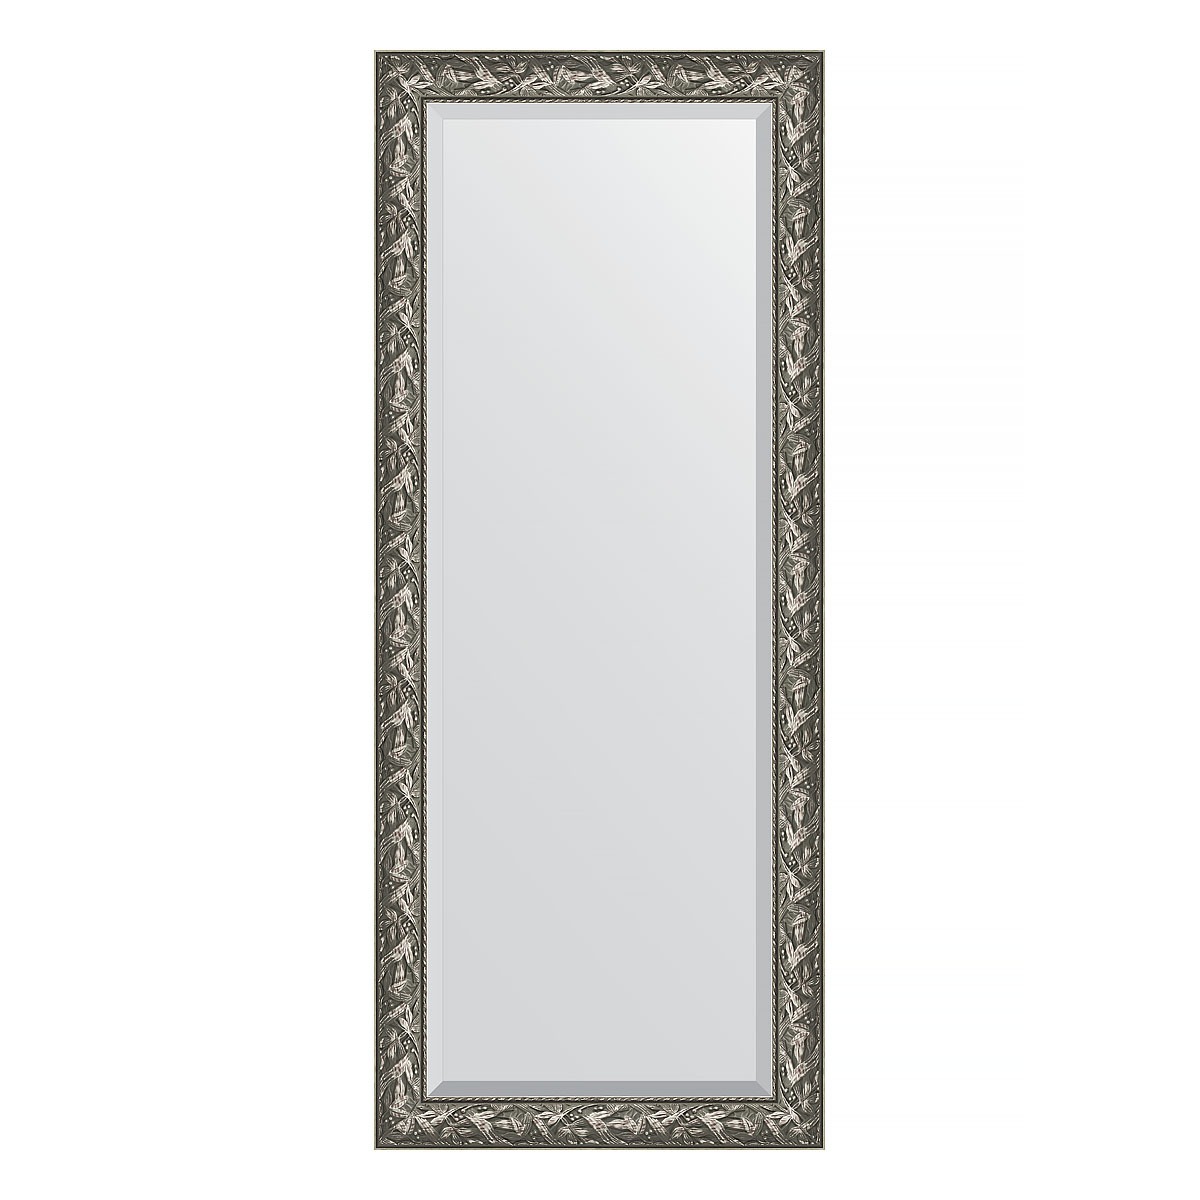 Зеркало напольное с фацетом в багетной раме Evoform византия серебро 99 мм 84x203 см зеркало напольное с фацетом в багетной раме evoform византия серебро 99 мм 84x203 см